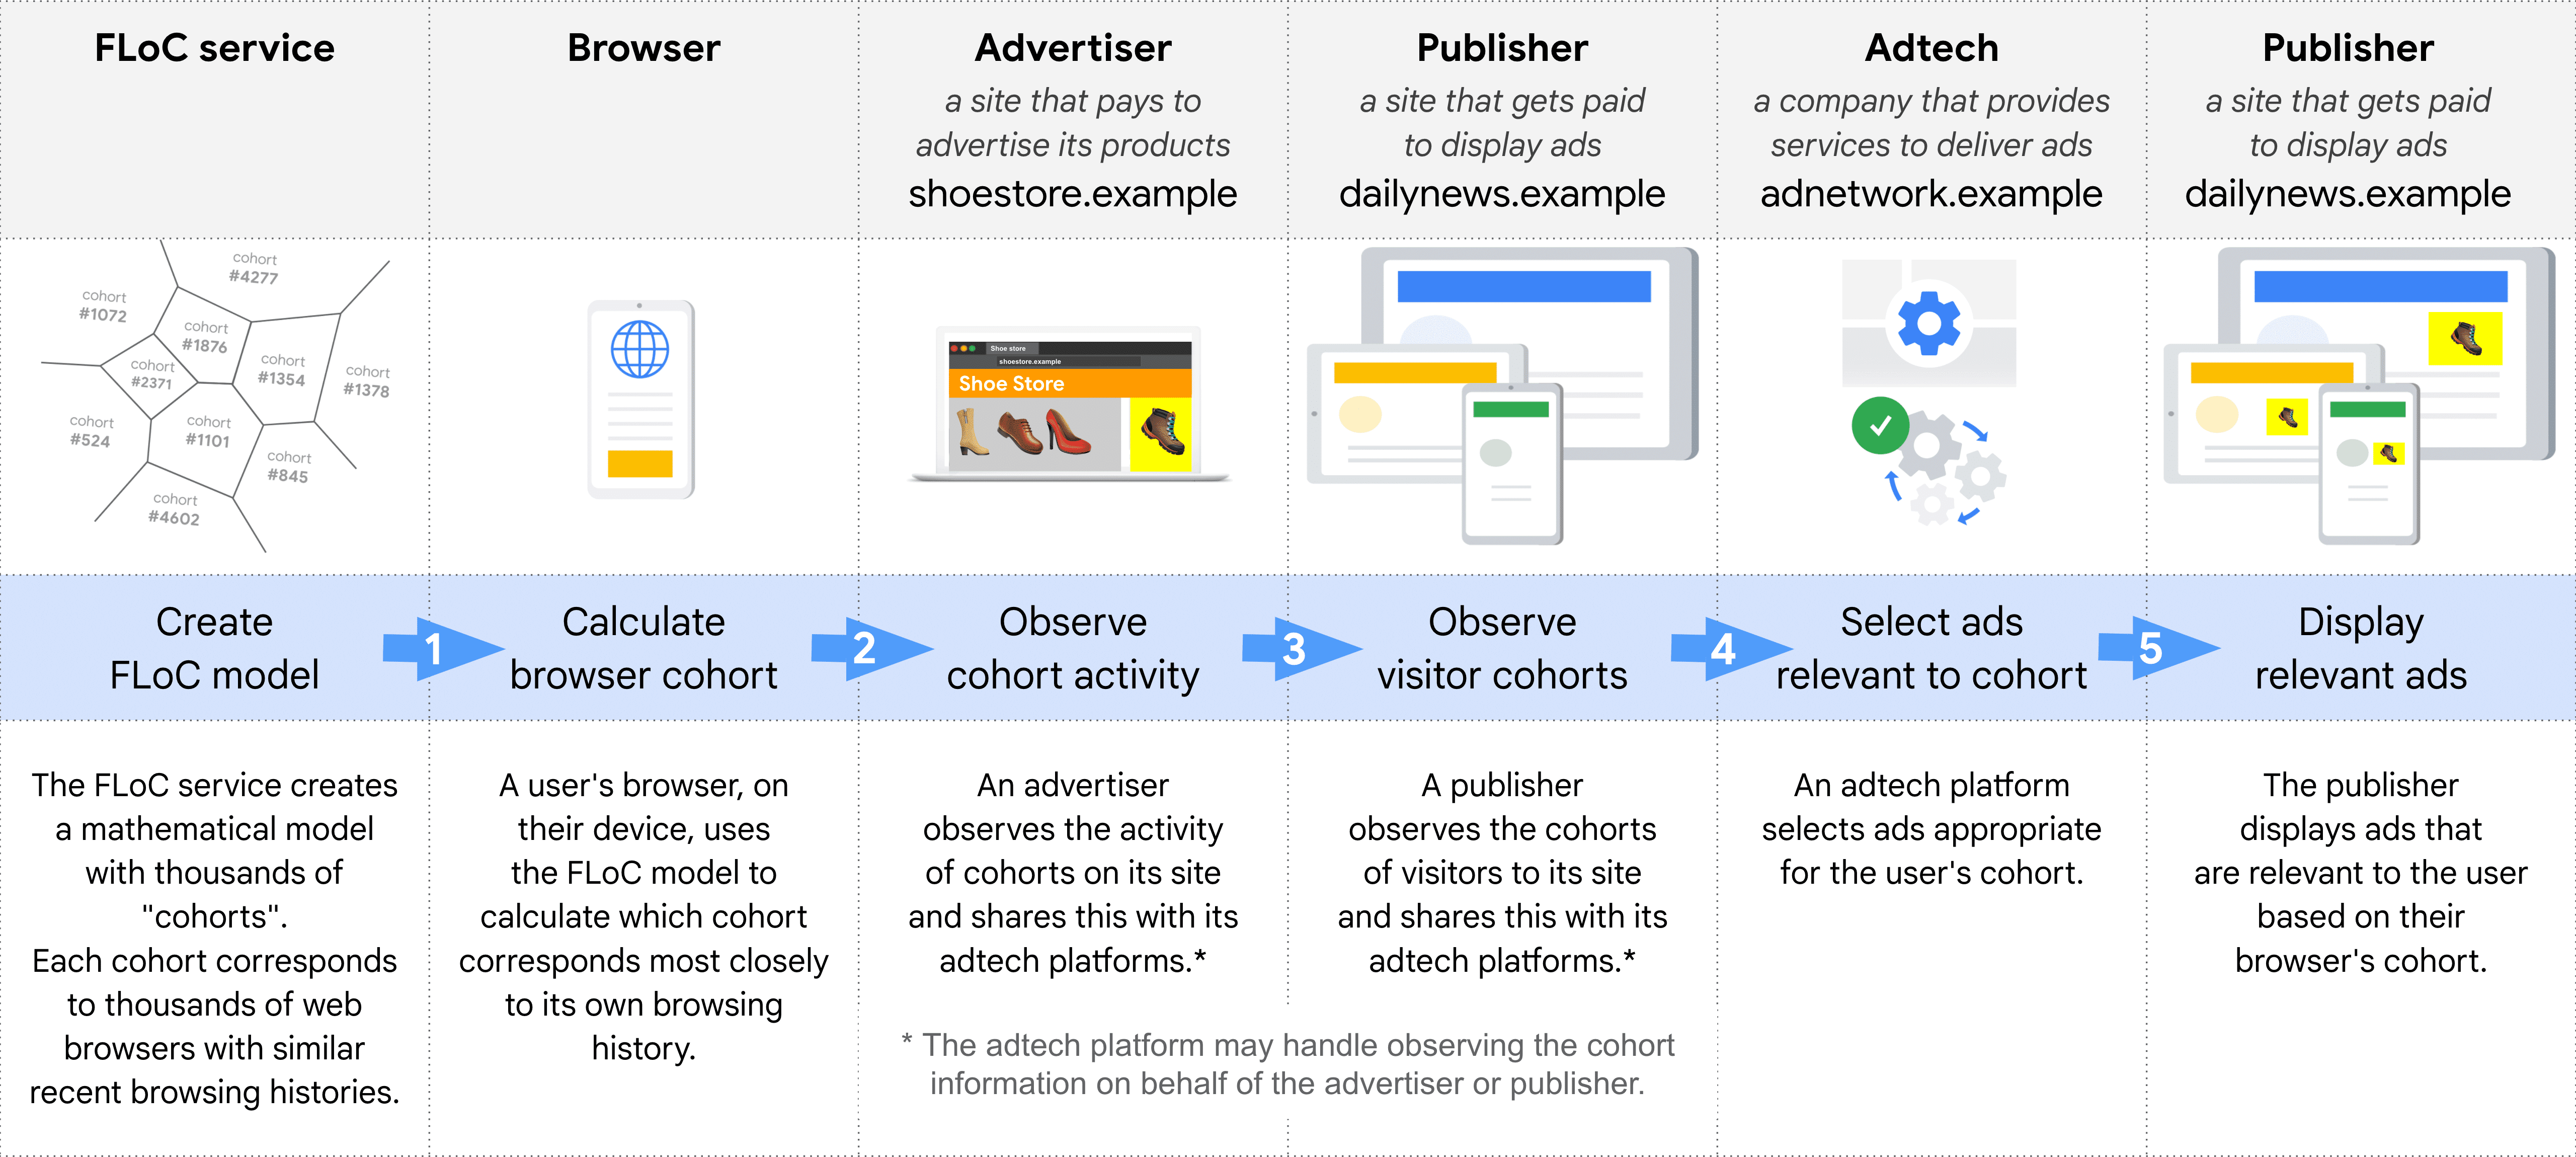 Diagrama que muestra, paso a paso, las diferentes funciones para seleccionar y publicar un anuncio relevante con FLoC: servicio de FLoC, navegador, anunciantes, publicador (para observar cohortes), tecnología publicitaria, publicador (para mostrar anuncios)